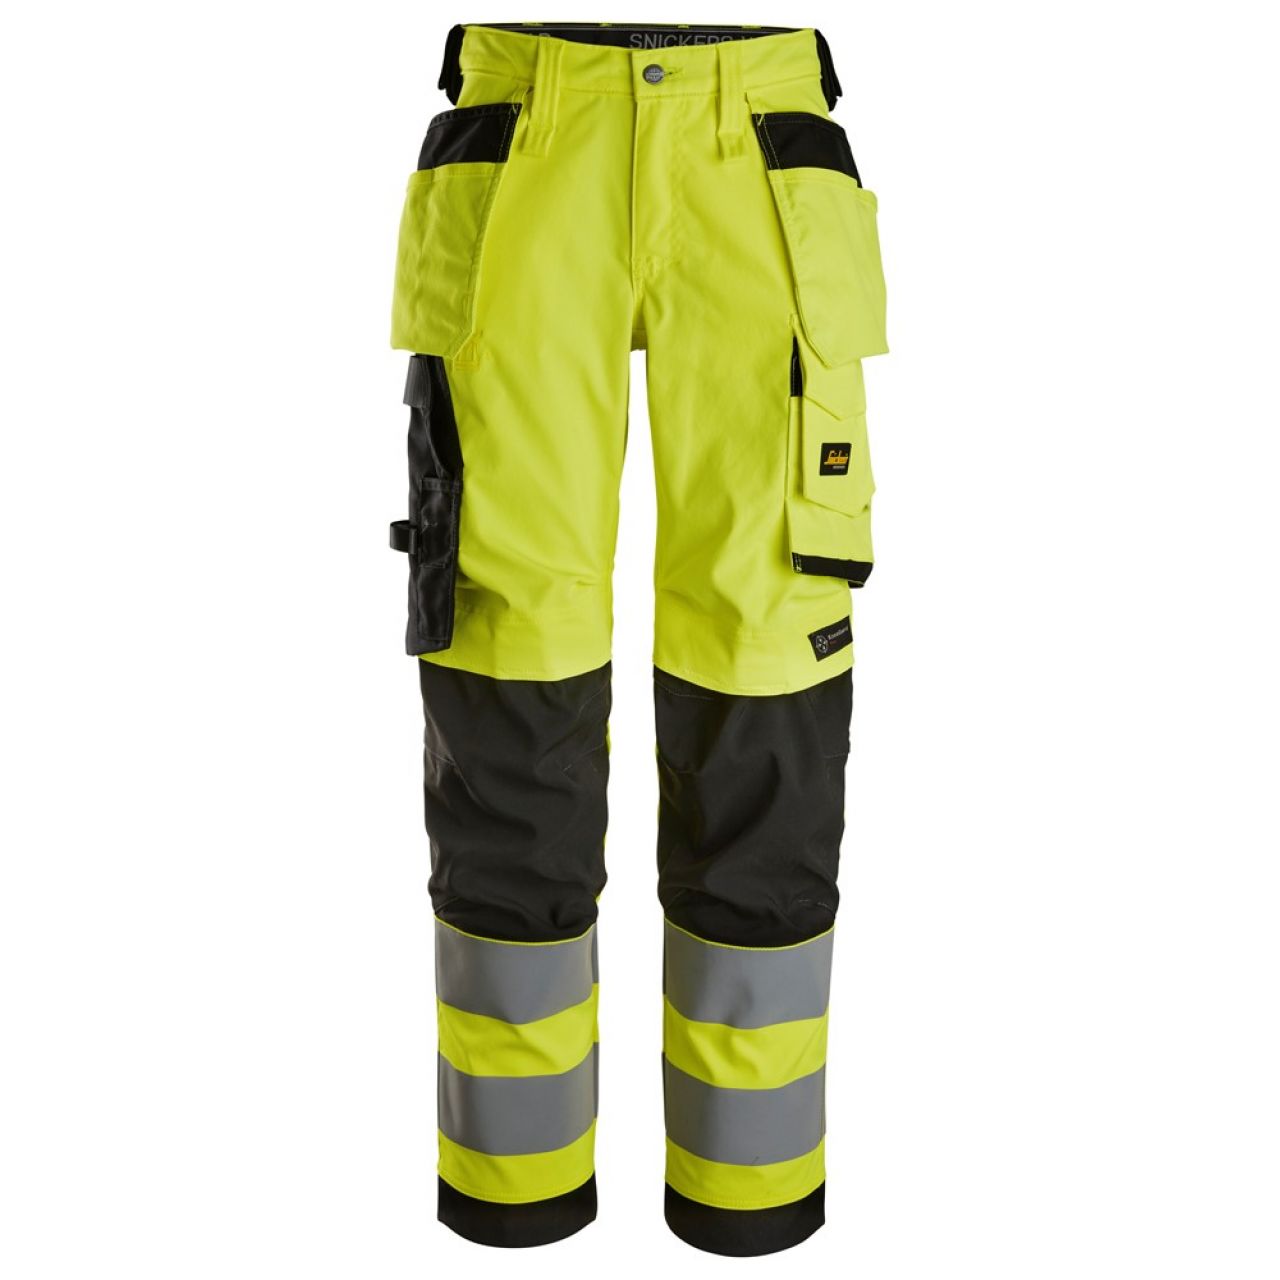 6743 Pantalones largos de trabajo elásticos de alta visibilidad clase 2 para mujer con bolsillos flotantes amarillo-negro talla 84